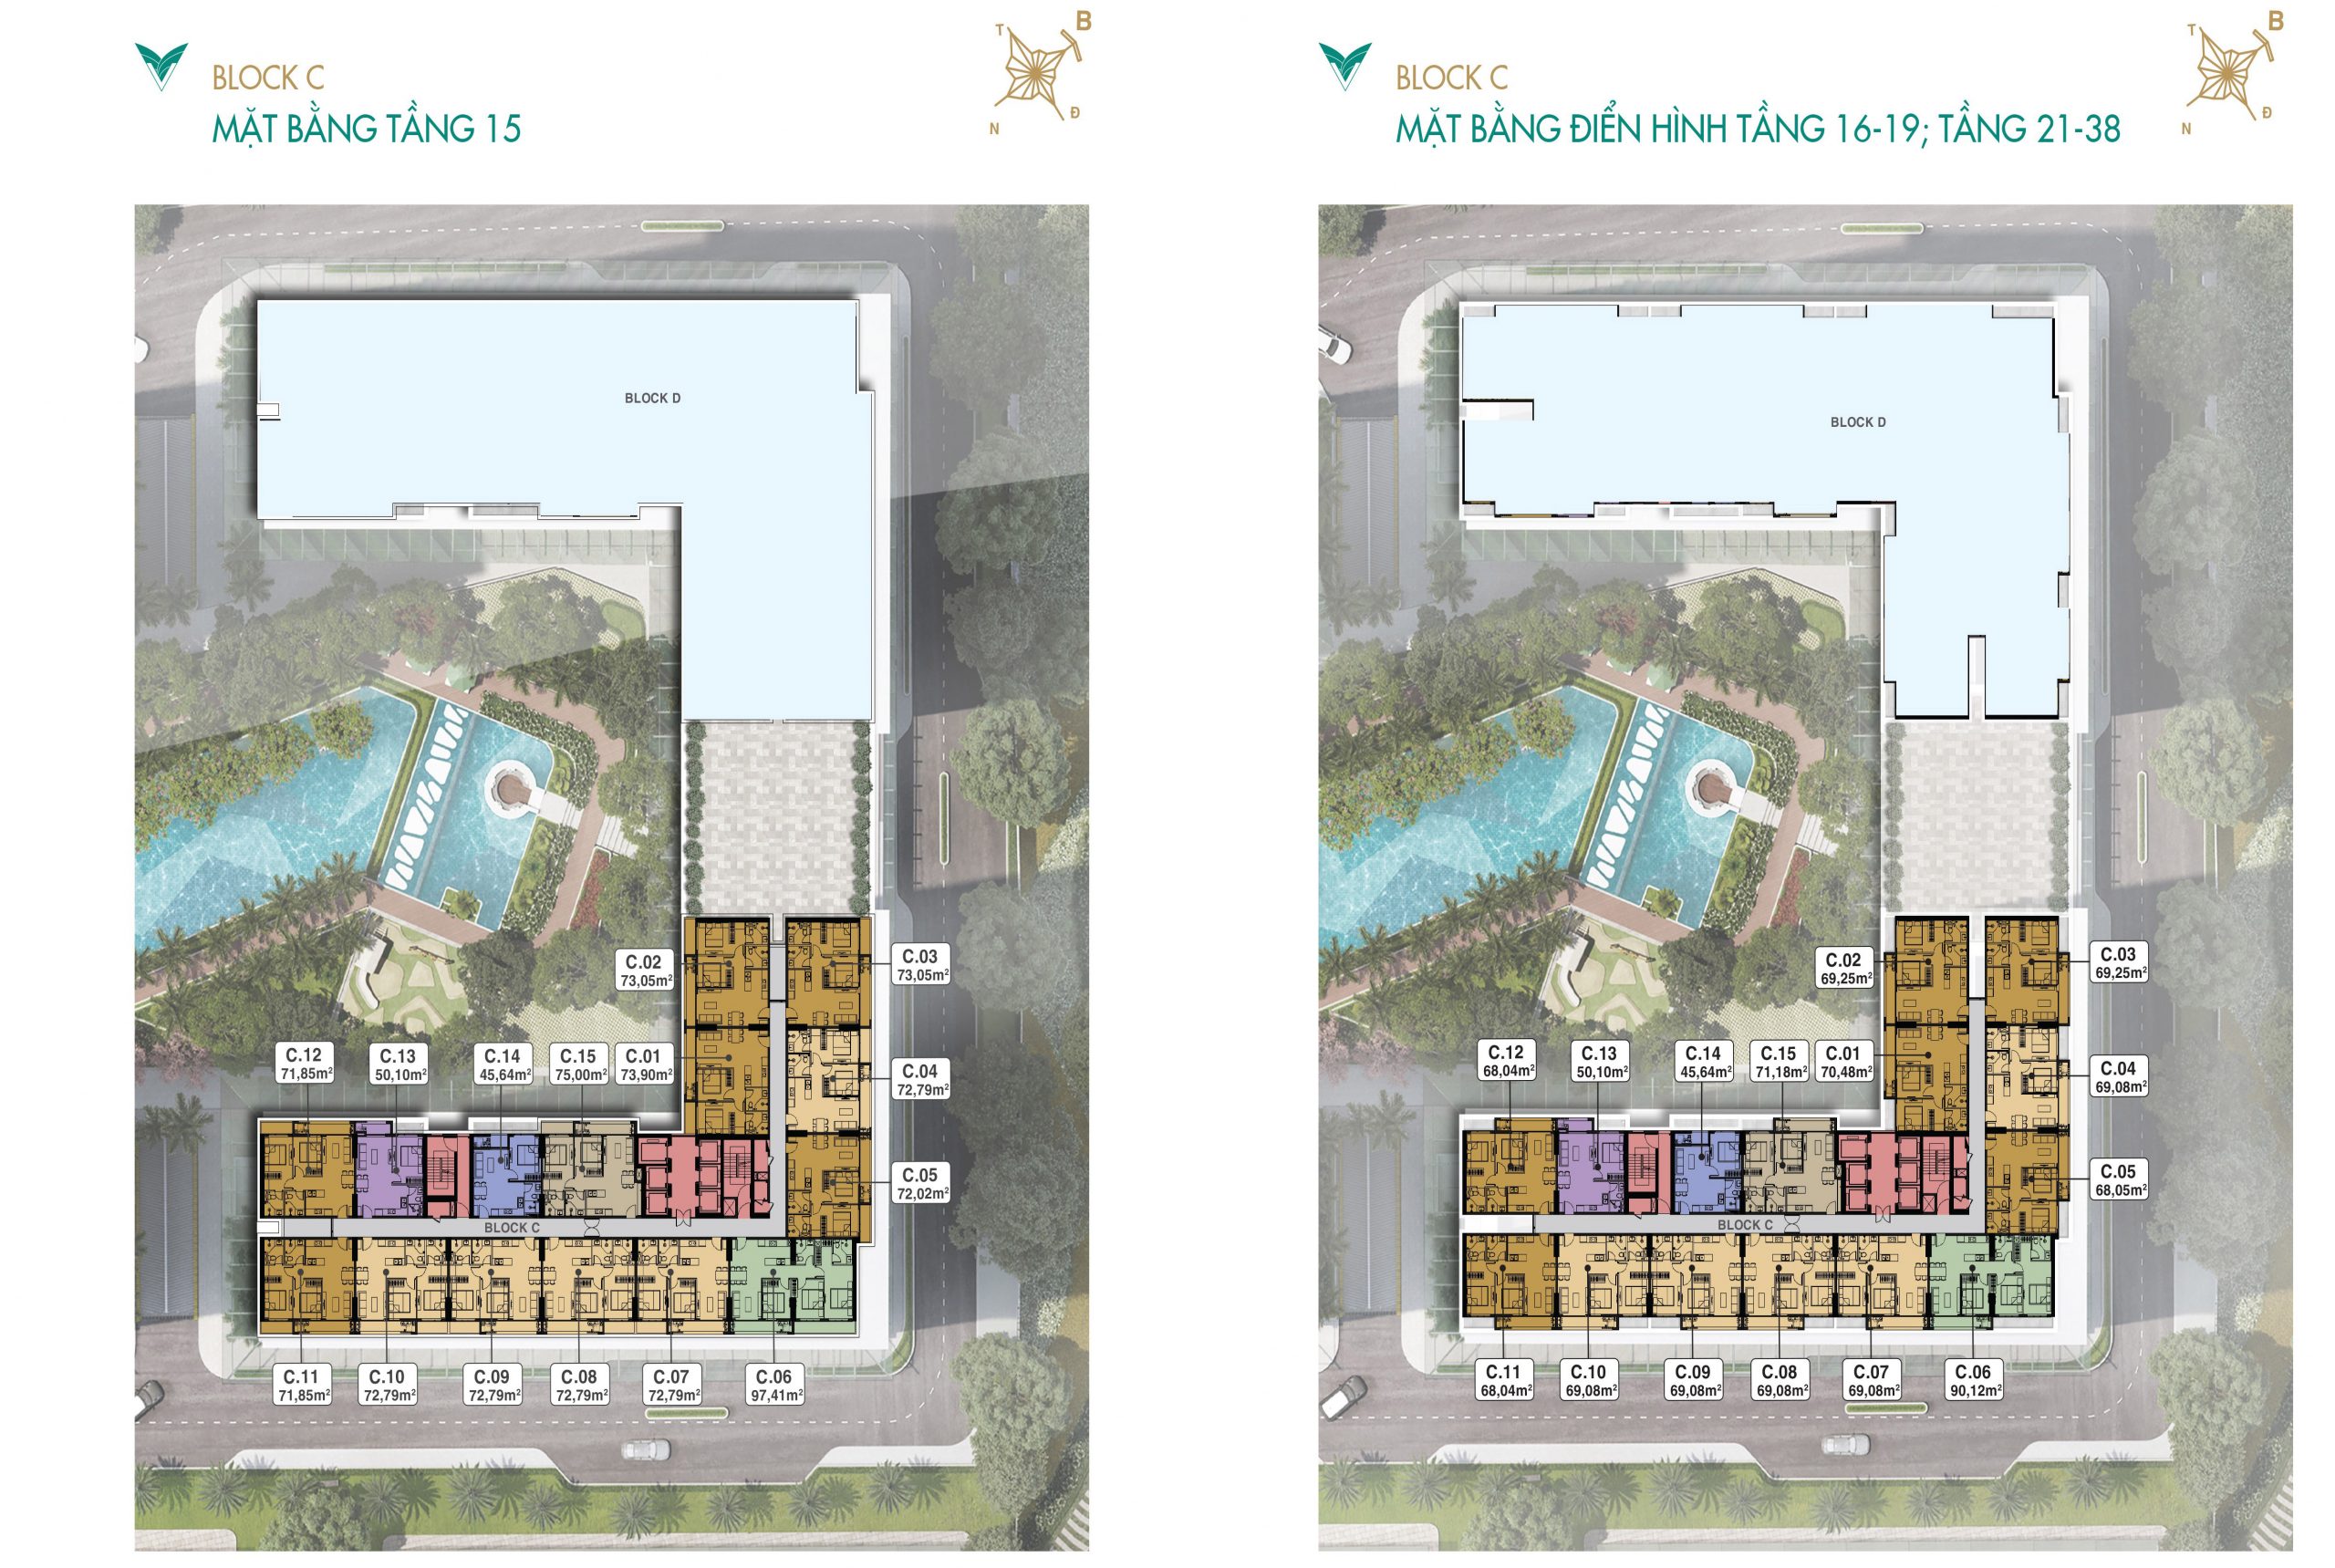 Mặt bằng thiết kế tầng 15, 16 - 19, 21 - 38 block C dự án Lavita Thuận An